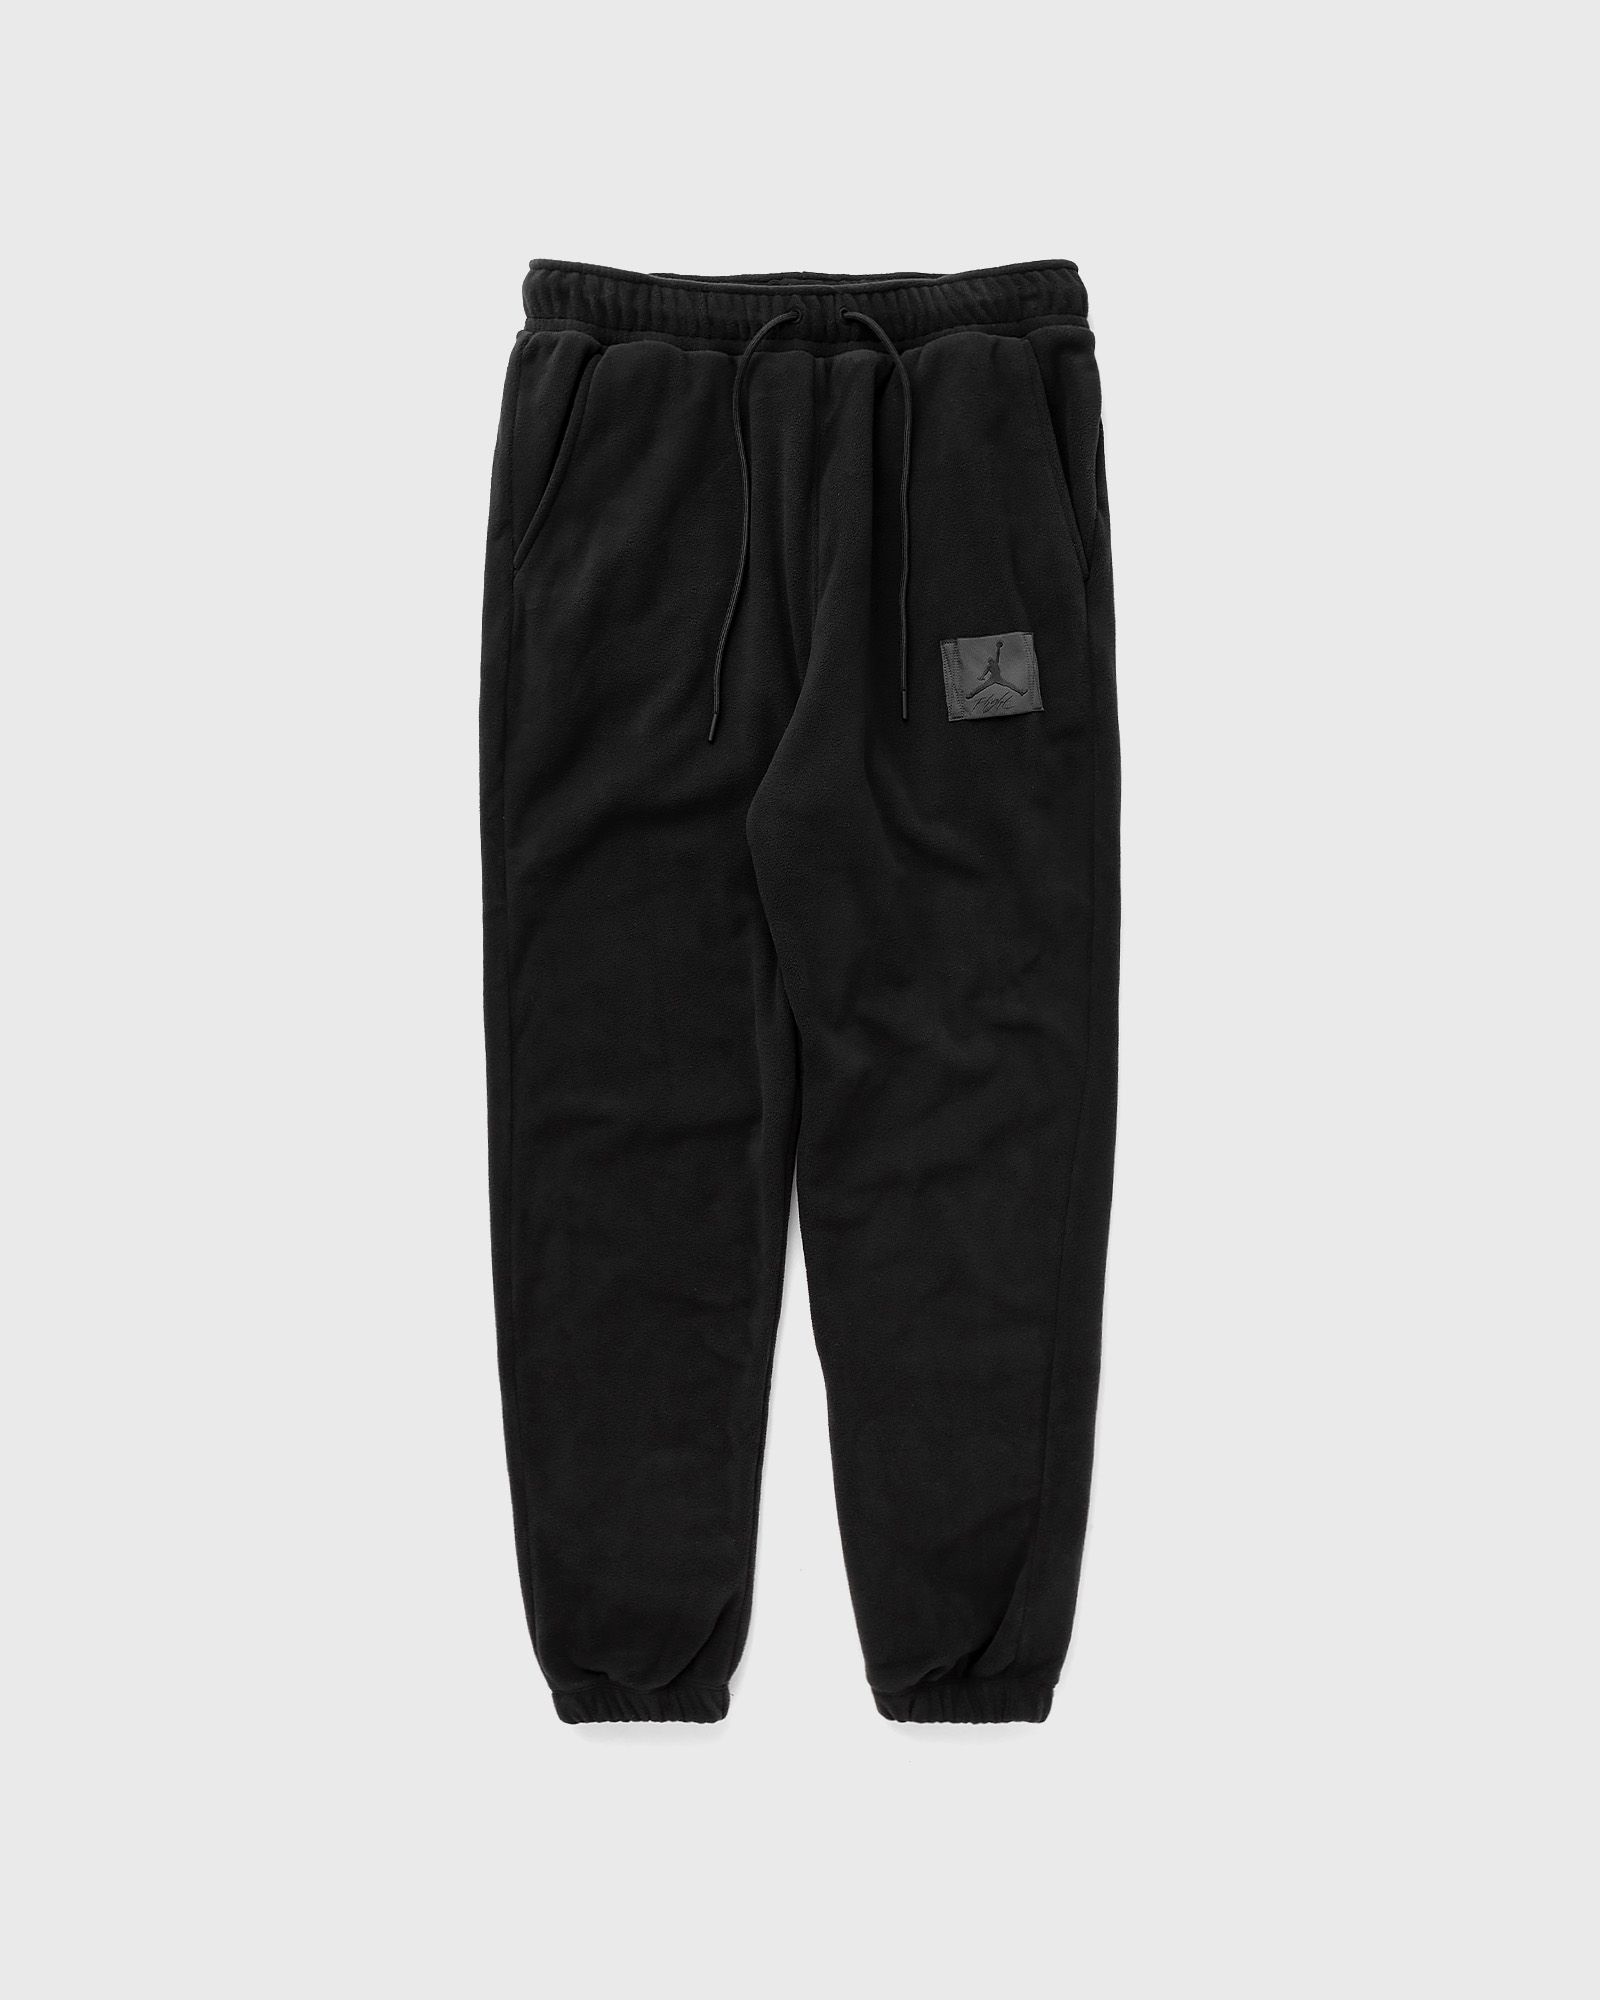 Jordan - essentials men's fleece winter pants men sweatpants black in größe:xl